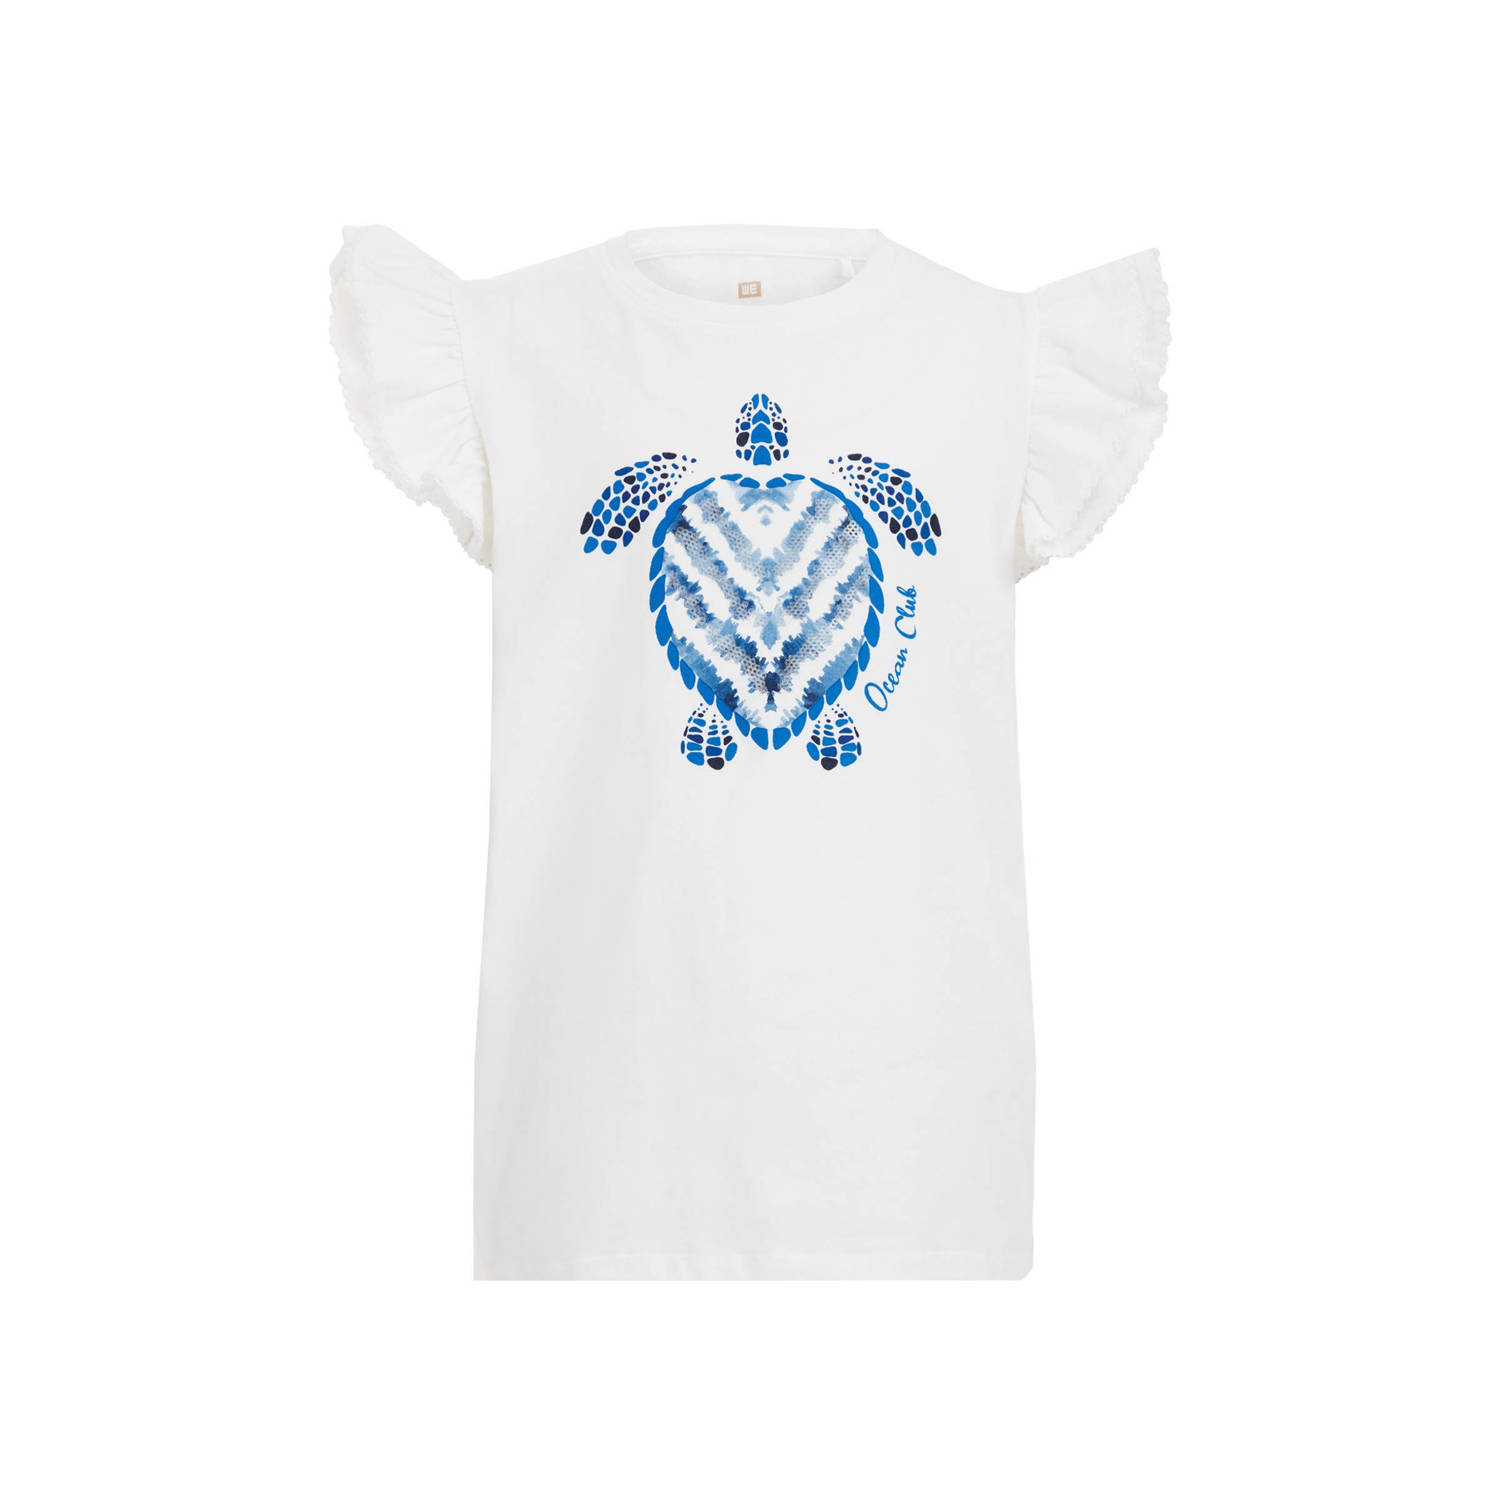 WE Fashion T-shirt met printopdruk wit Meisjes Biologisch katoen Ronde hals 110 116